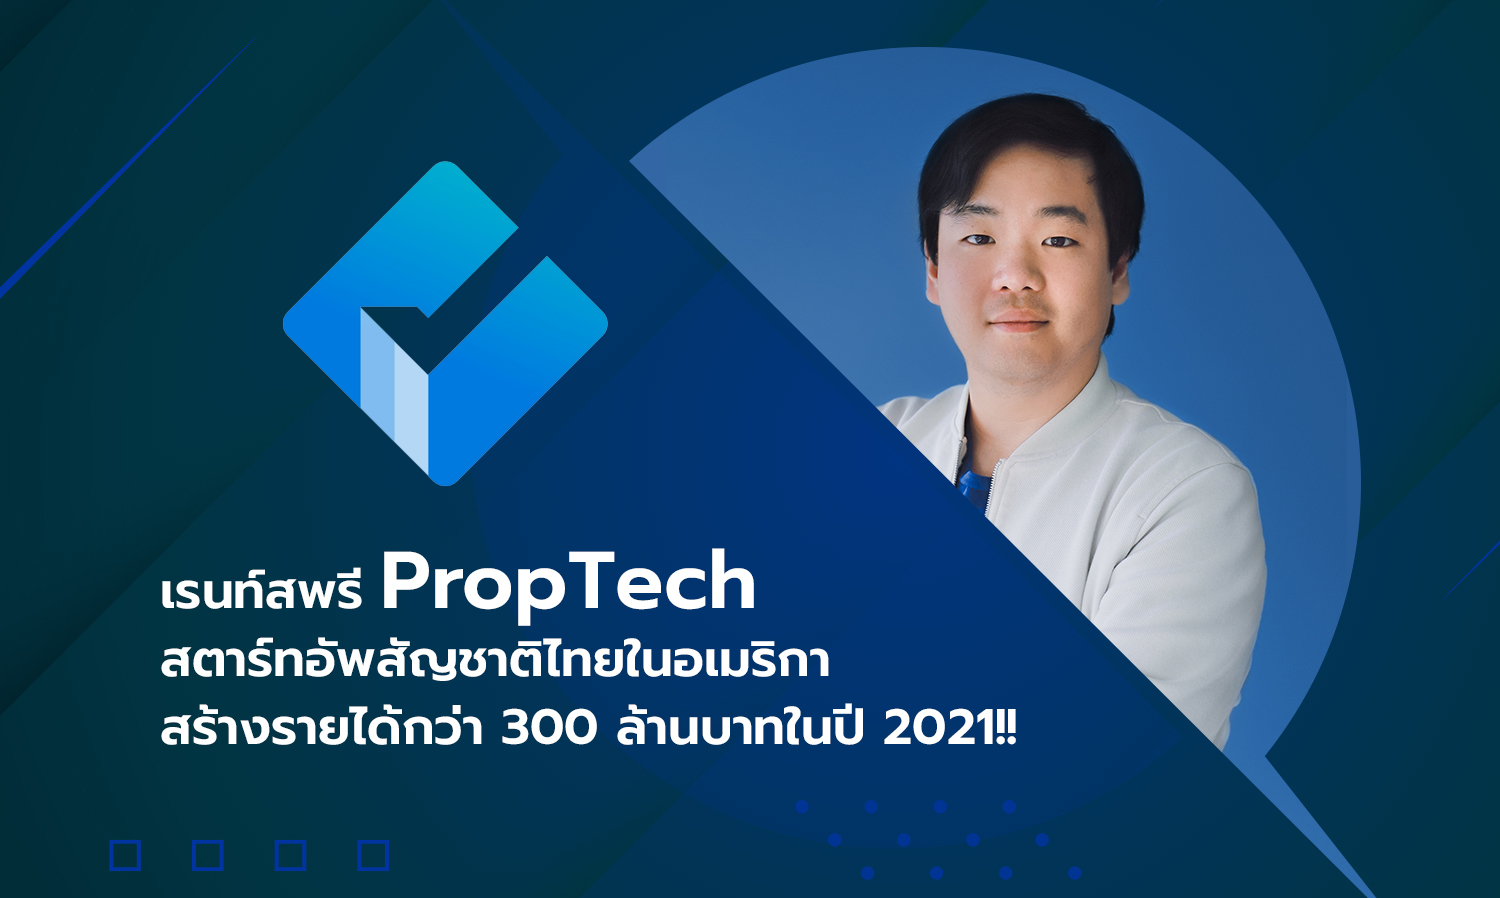 เรนท์สพรี PropTech สตาร์ทอัพสัญชาติไทยในอเมริกา สร้างรายได้กว่า 300 ล้านบาทในปี 2021!!